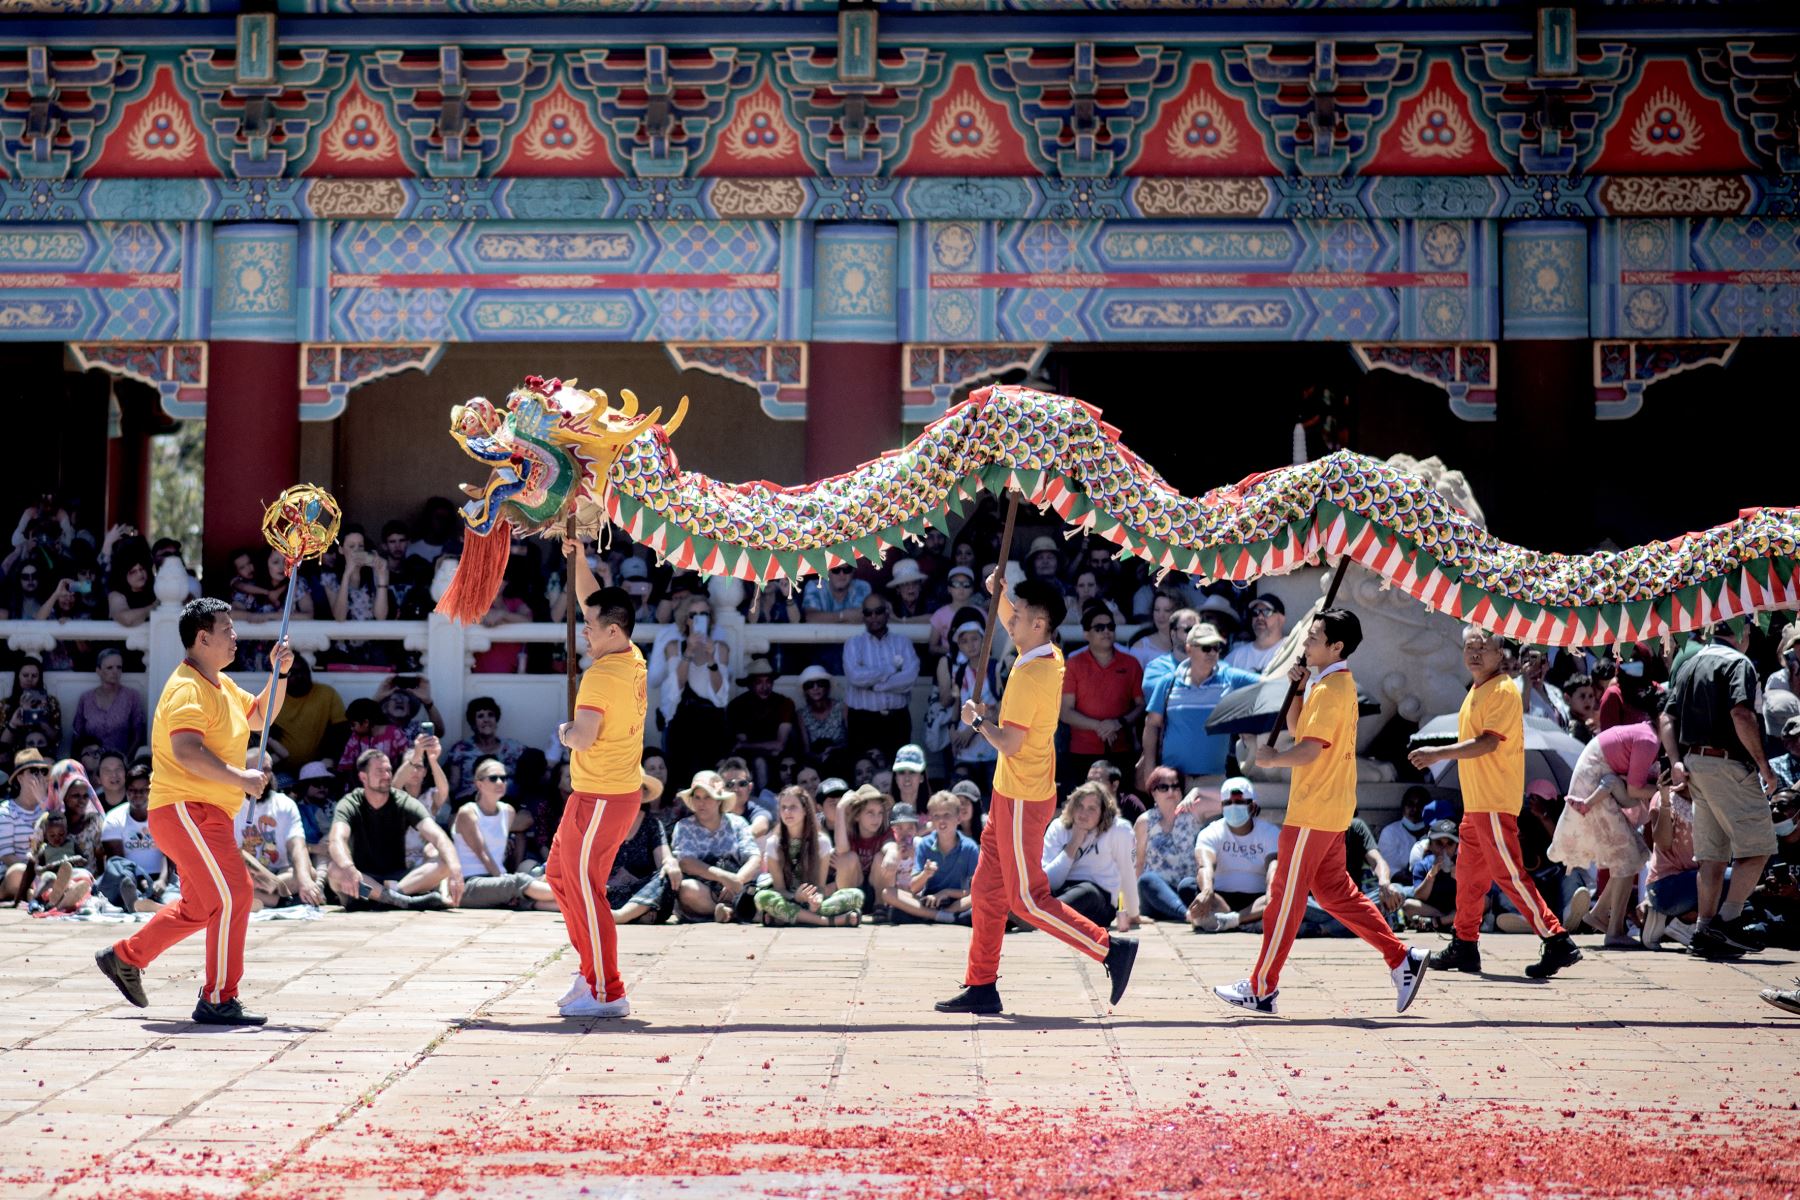 Los bailarines actúan durante una danza tradicional del dragón chino durante la celebración del Año Nuevo chino (Año del Conejo) en el Templo Nan Hua en Bronkhorstspruit, el 22 de enero de 2023.
Foto: AFP